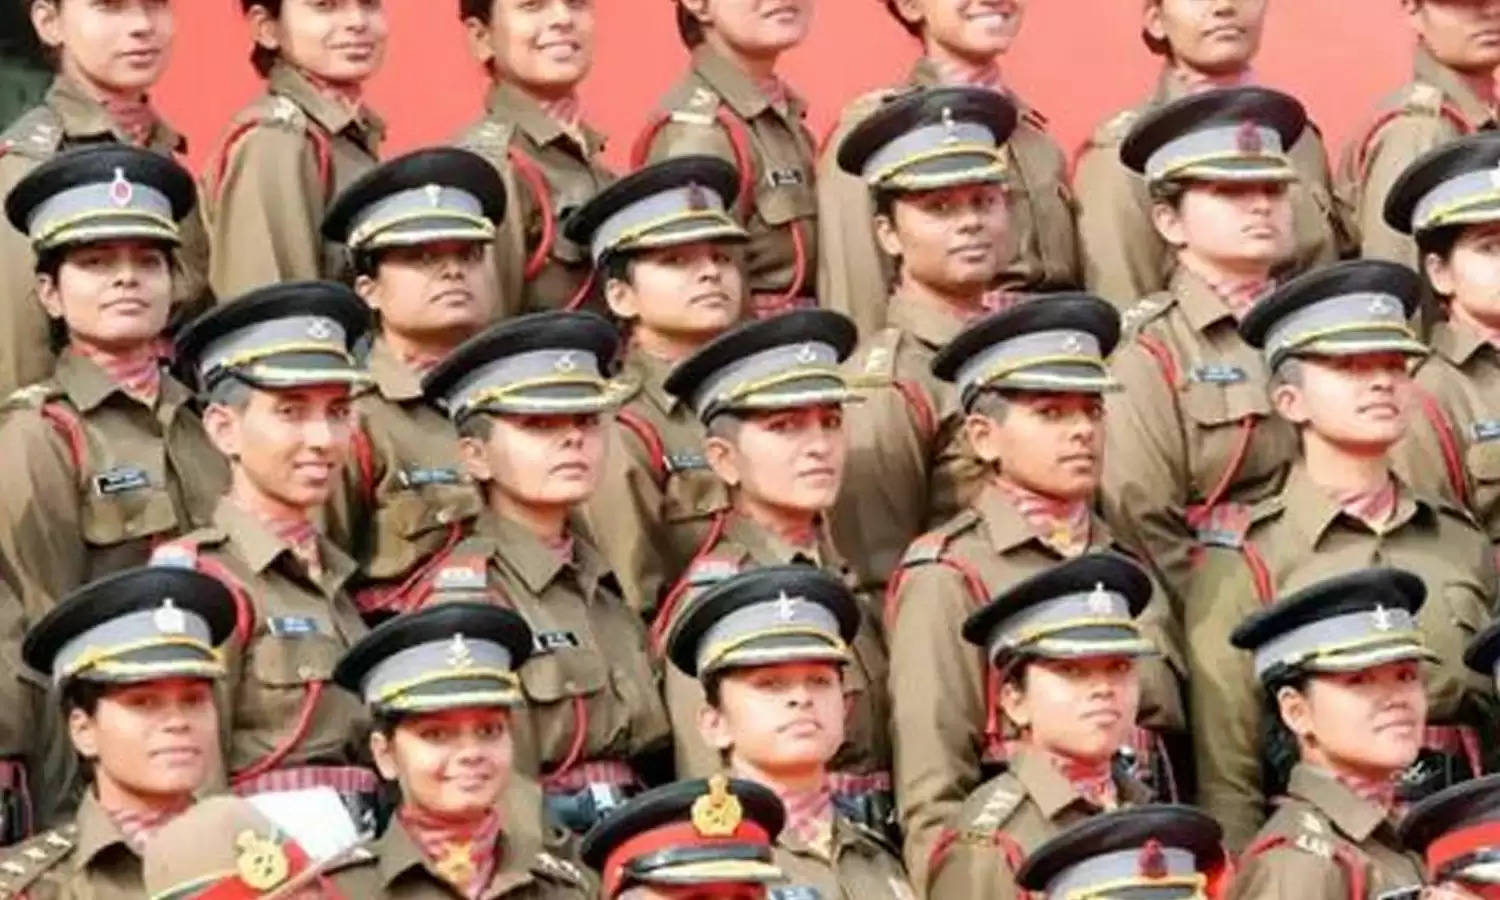 भारत तिब्बत सीमा पुलिस बल ने महिला व पुरुष से मांगे विभिन्न पदों पर आवेदन